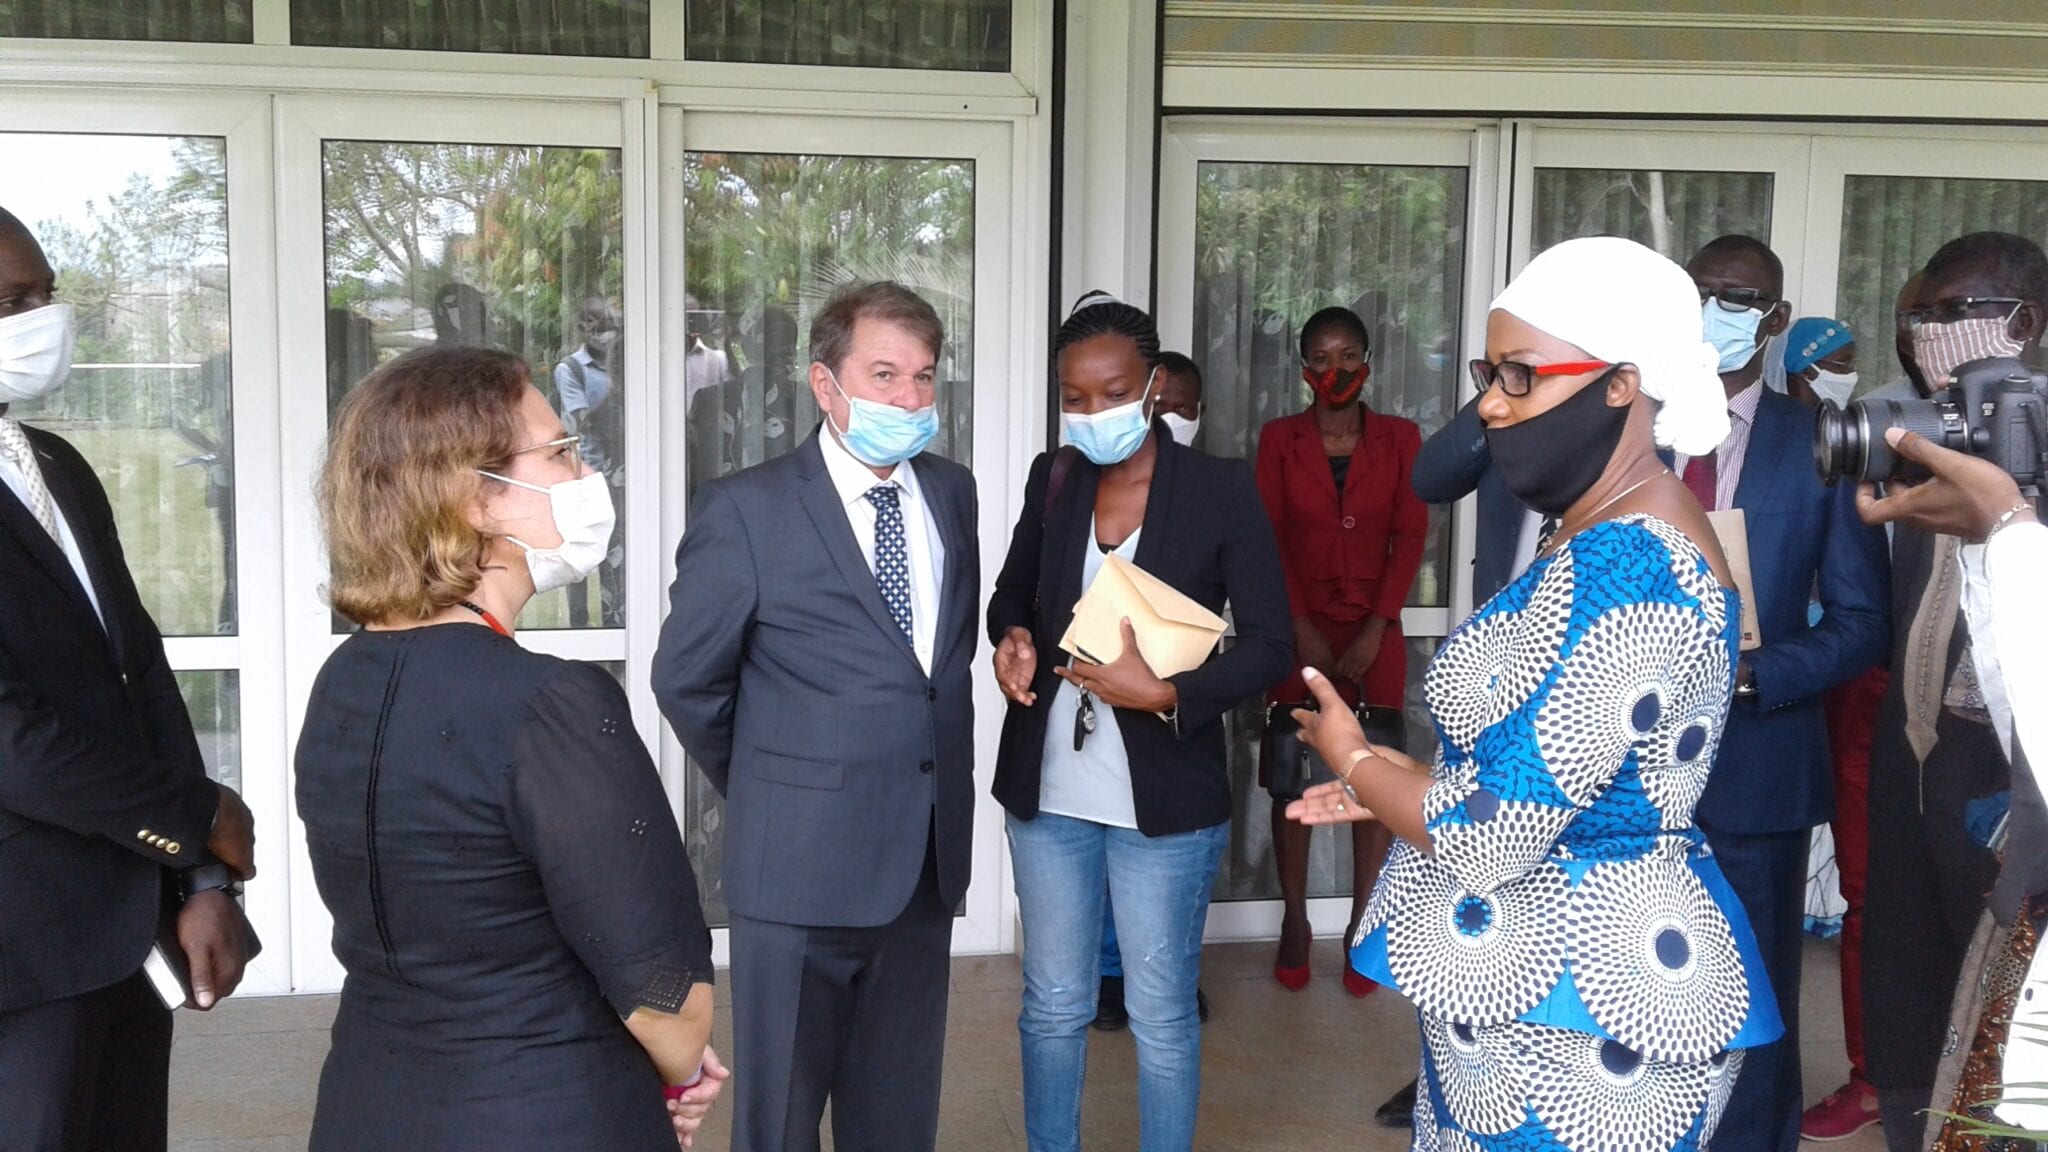 Côte D’ivoire : Don D’un Groupe Ivoiro-Turc À Une Ong Pour Assister Les Personnes Vulnérables